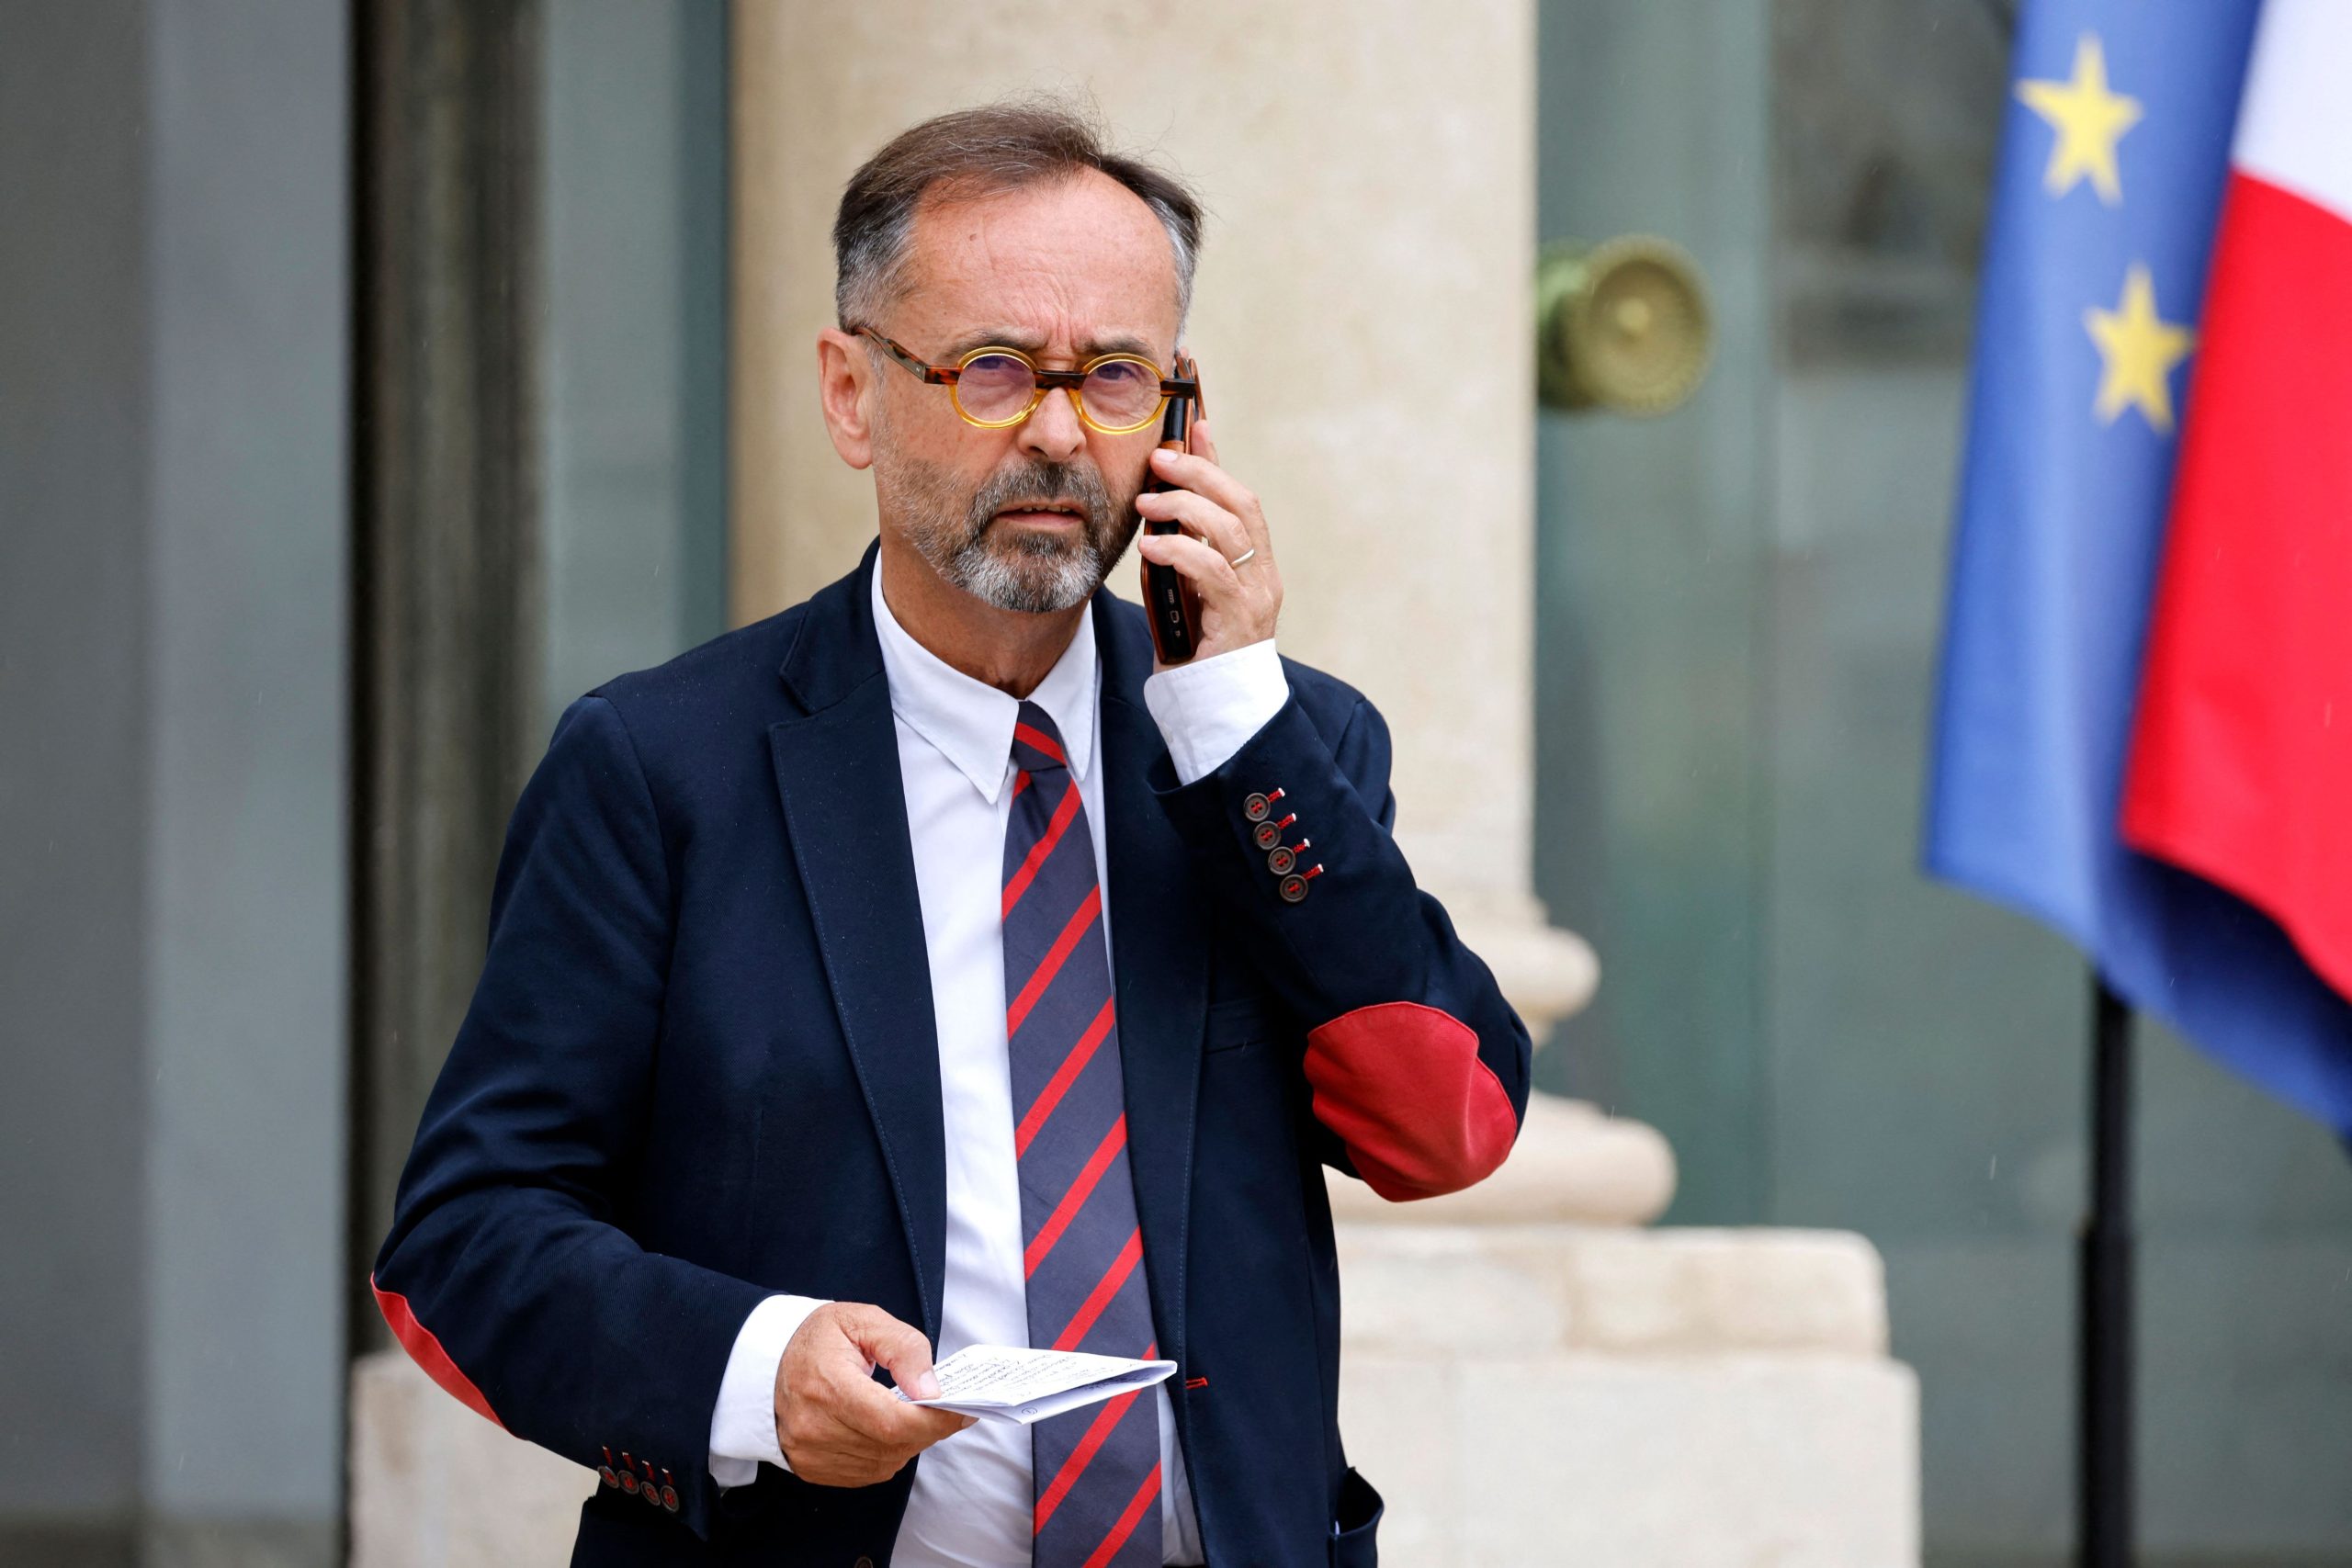 Robert Ménard, alcalde de Béziers, ha adoptado una postura dura sobre el crimen juvenil, pero la preocupación por la violencia juvenil es generalizada en todo el espectro político